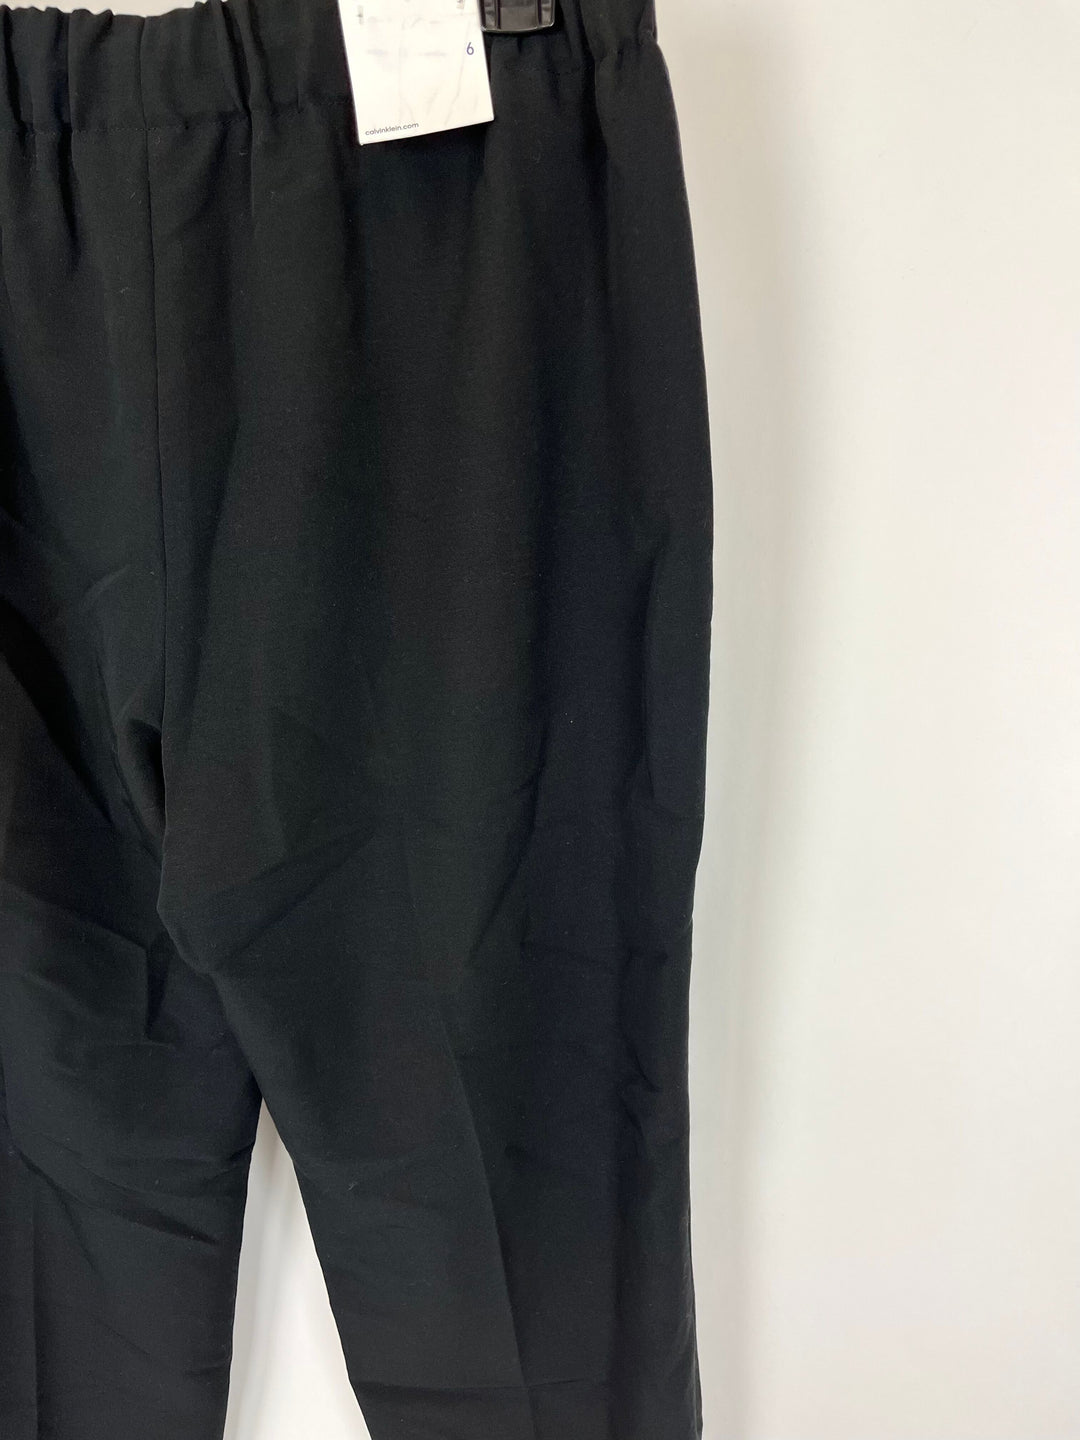 Black Pants - Size 6